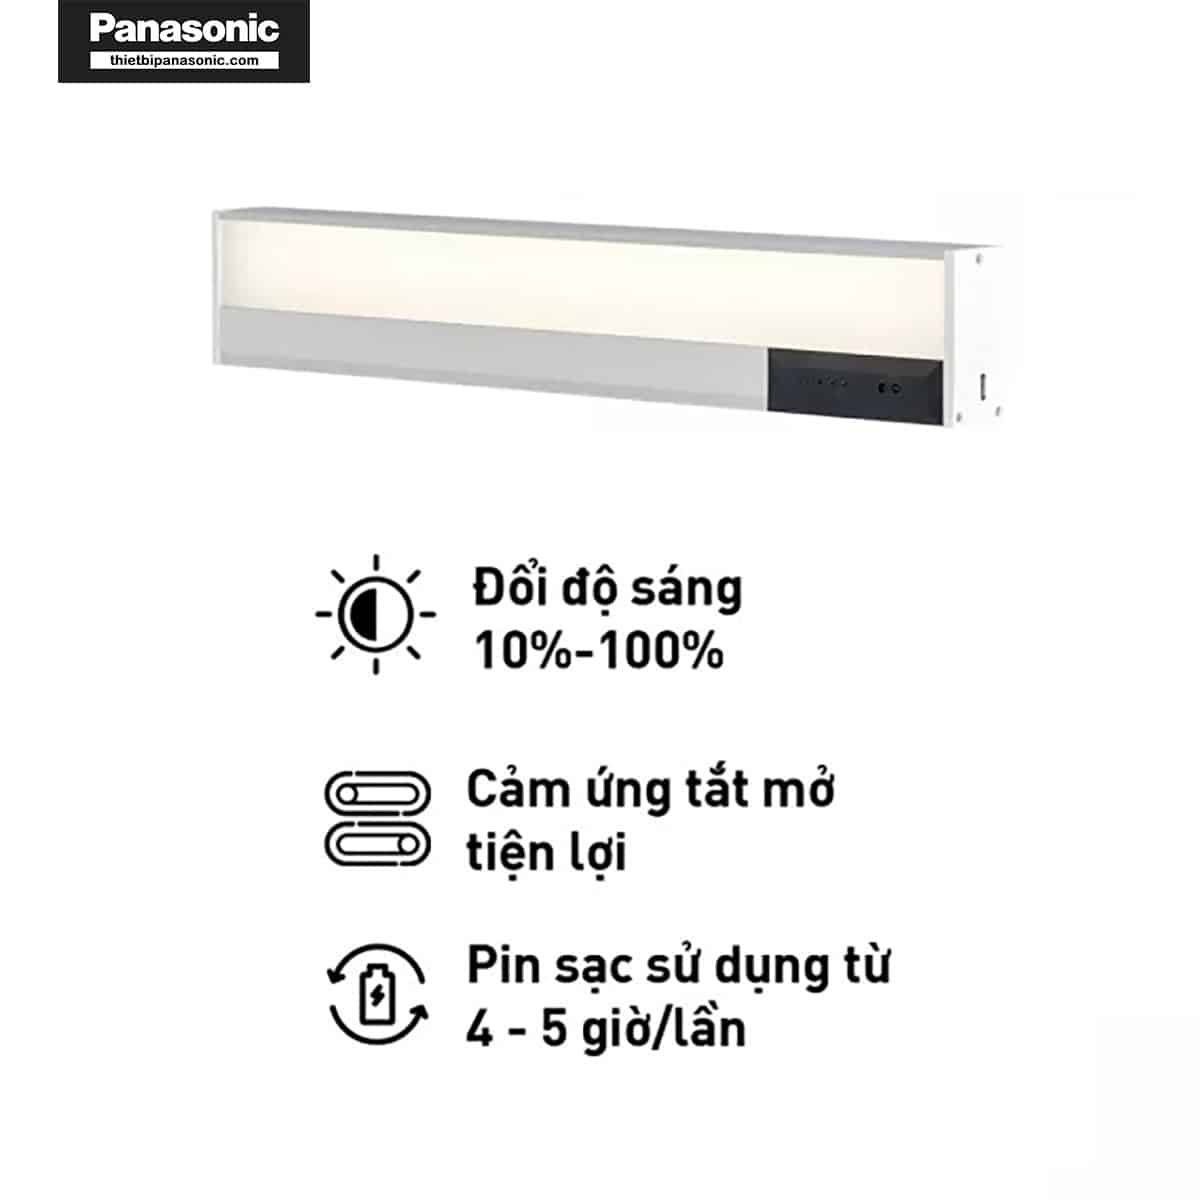 Ưu điểm của Đèn bàn Panasonic HHTQ045488